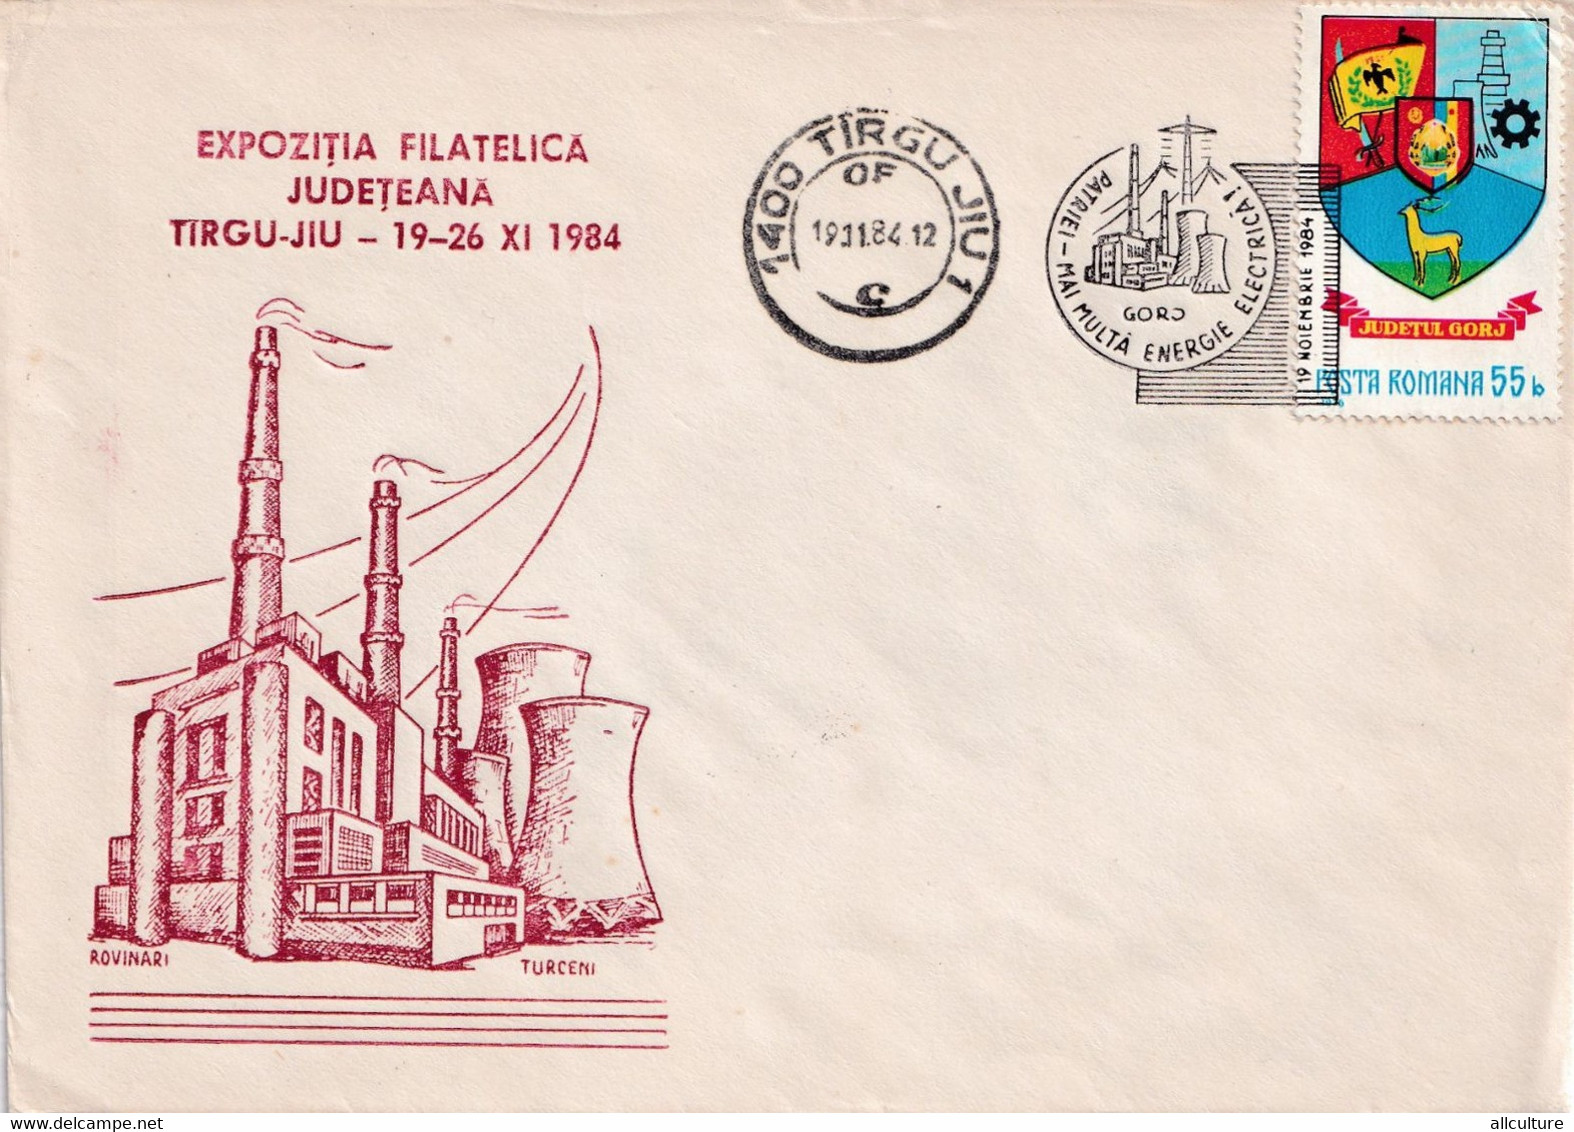 A2644 - Expozitia Filatelica Judeteana Targu-Jiu 1984, Stamp 1984 Judetul Gorj Romania - Briefe U. Dokumente